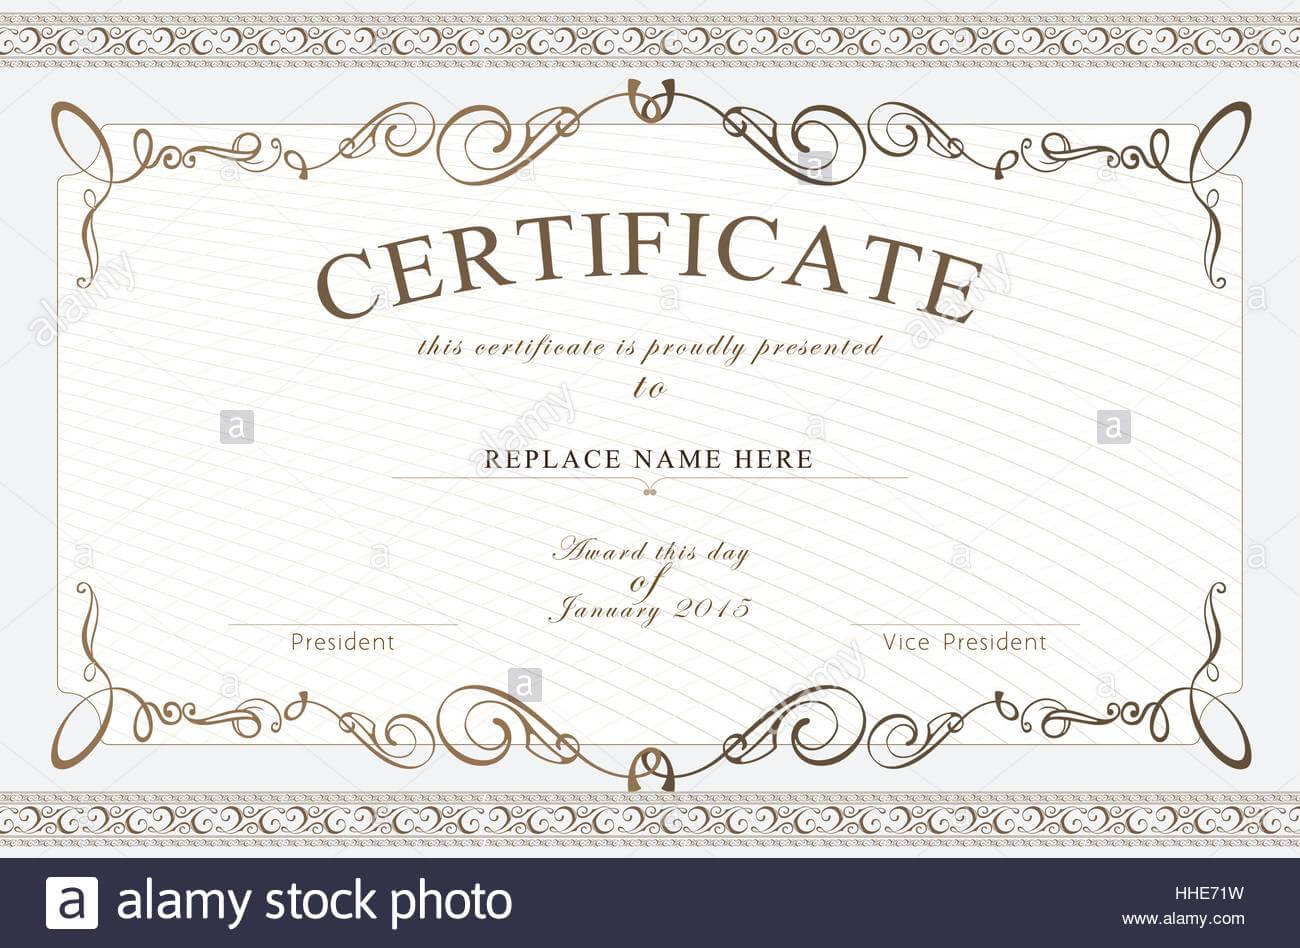 Certificate Border, Certificate Template. Vector Regarding Commemorative Certificate Template